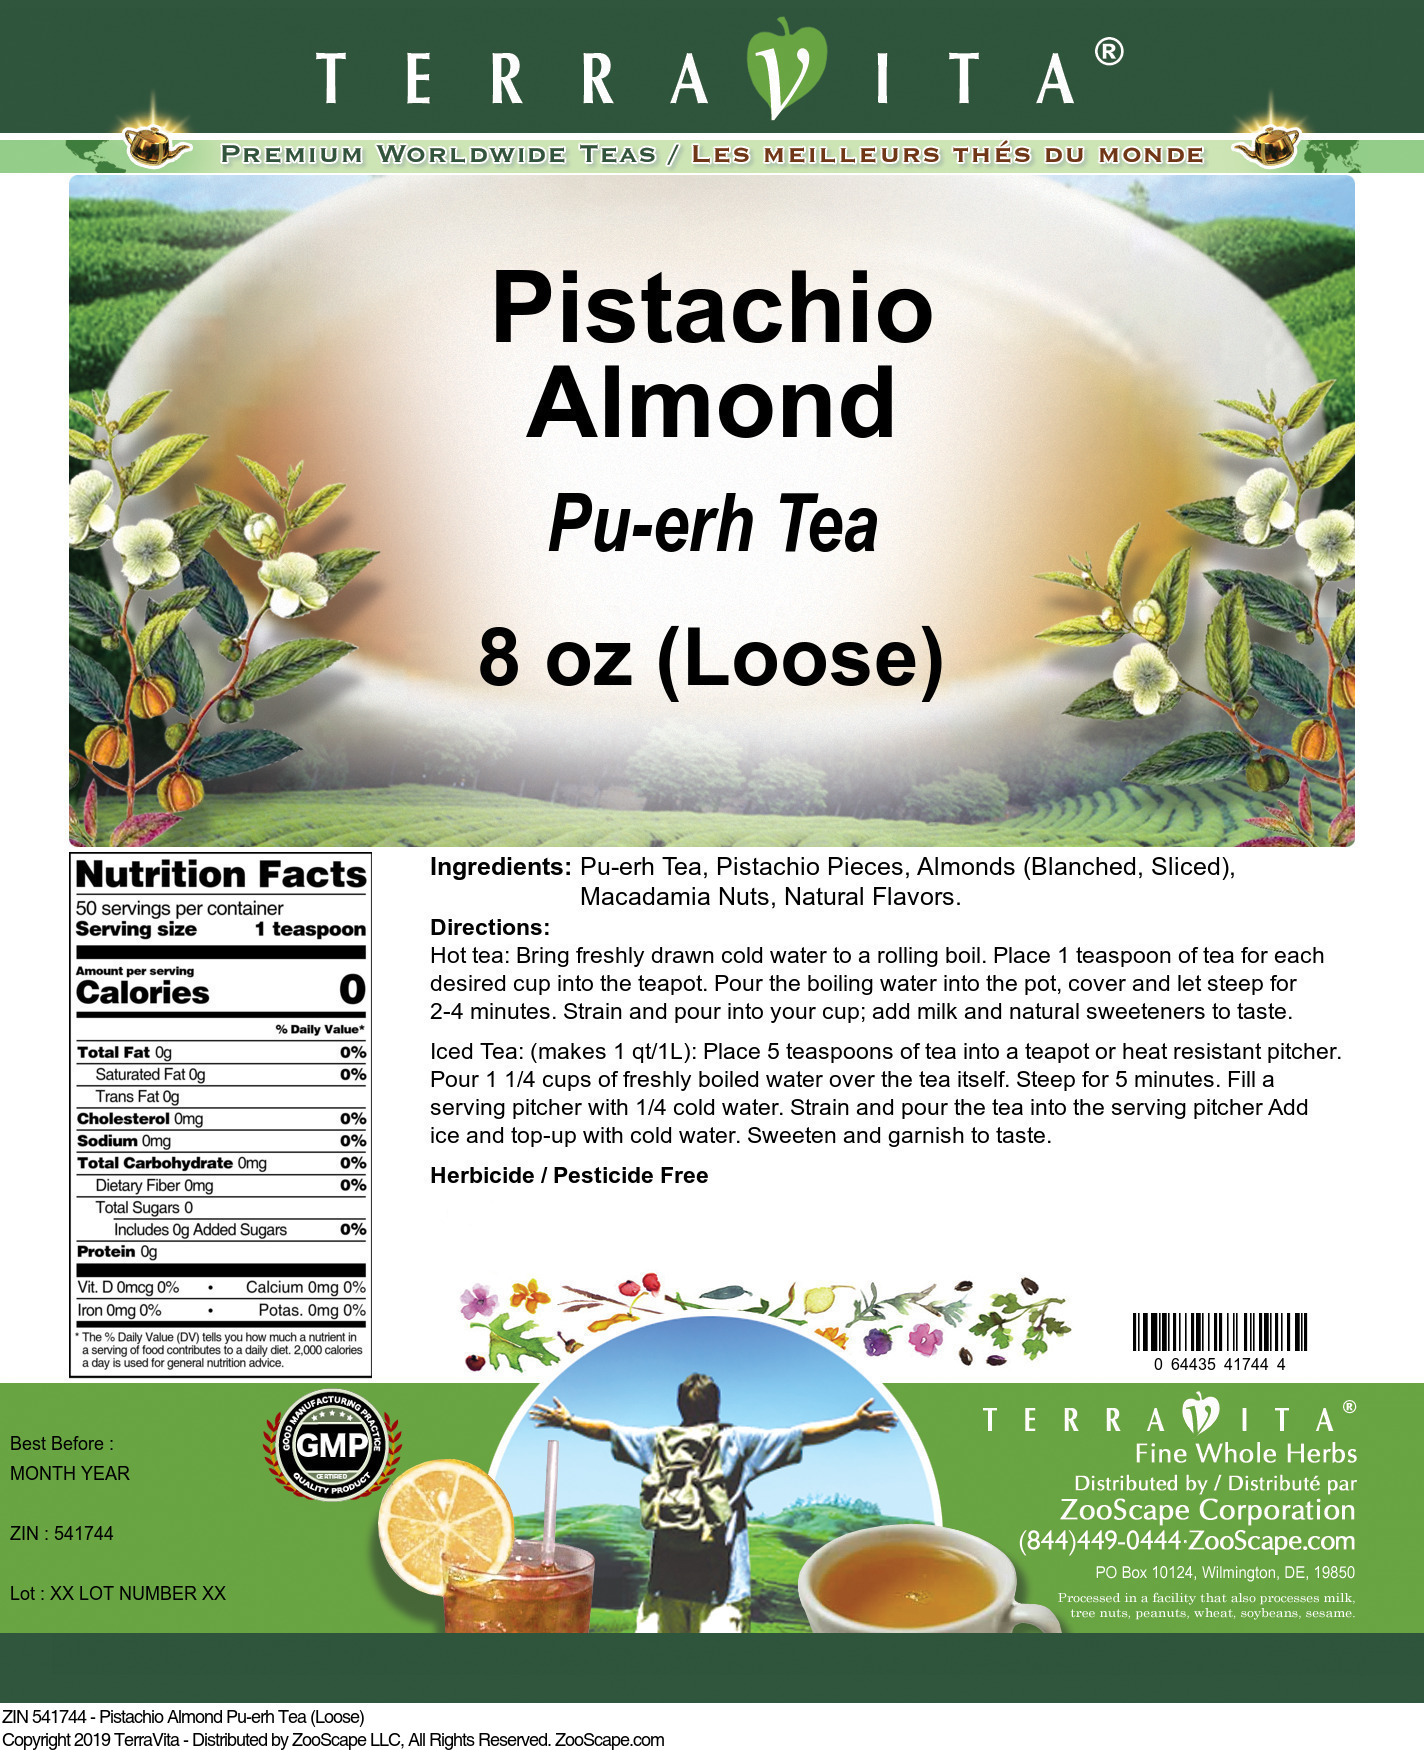 Pistachio Almond Pu-erh Tea (Loose) - Label